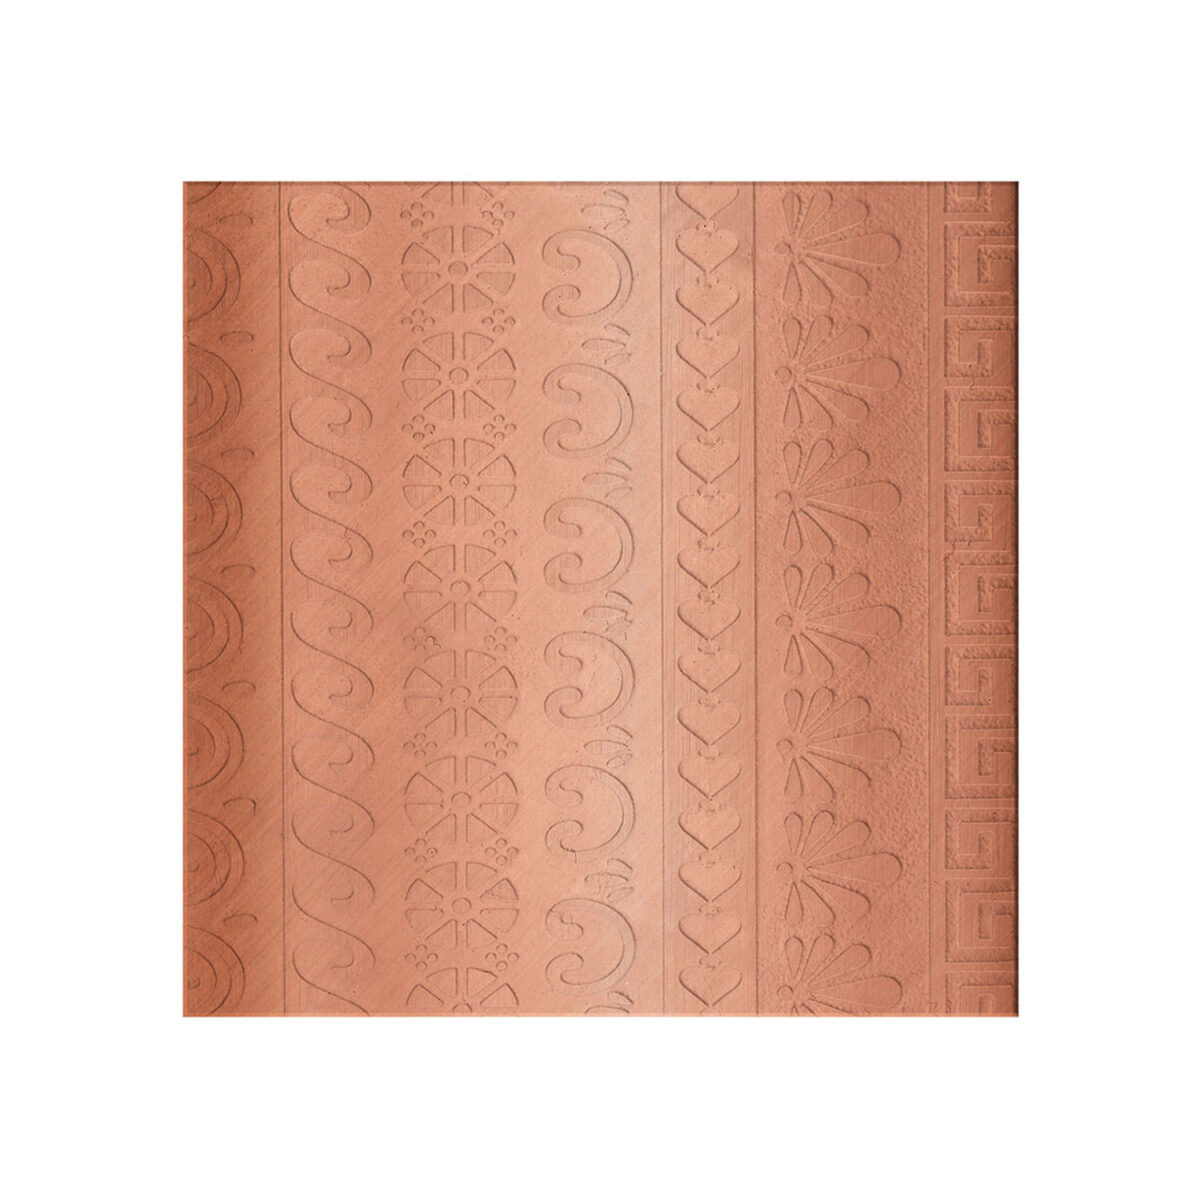 2103 ornate pattern plate 3